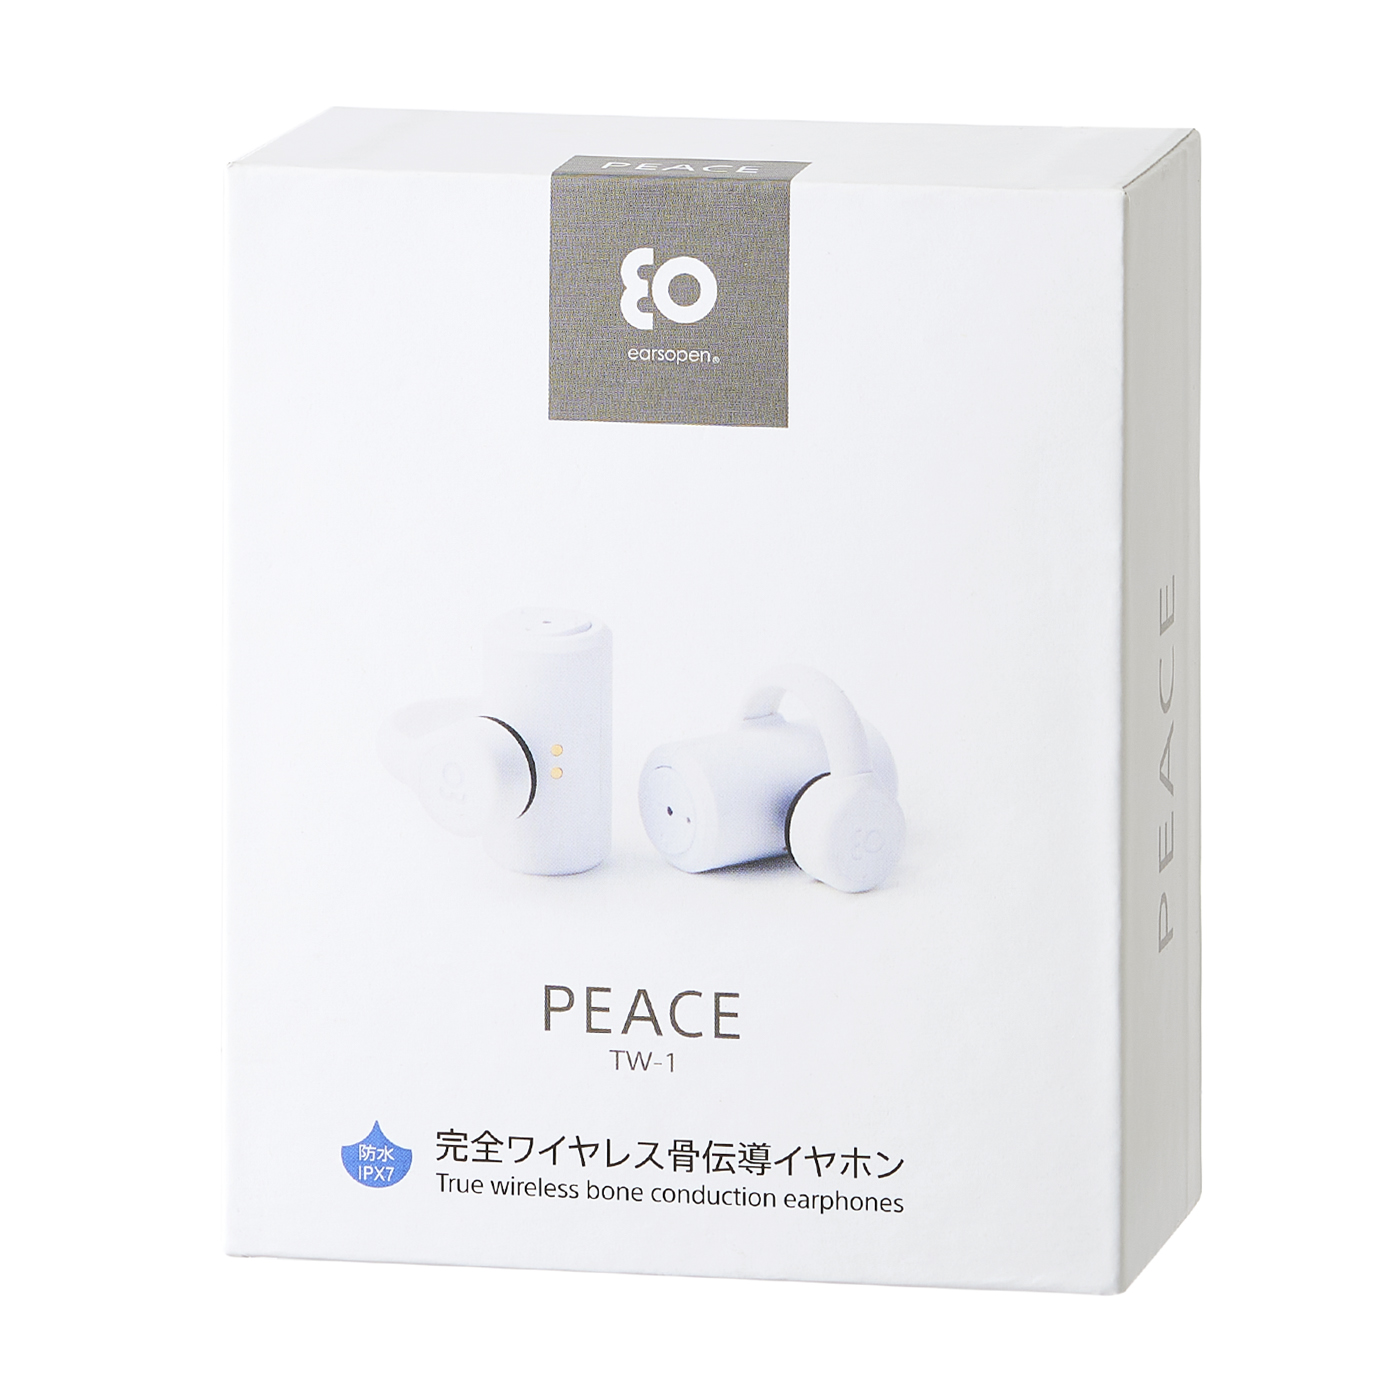 程度極上 BoCo 完全ワイヤレス Bluetooth 骨伝導イヤホン（ホワイト） earsopen PEACE TW-1 WHITE P イヤホン、ヘッドホン 